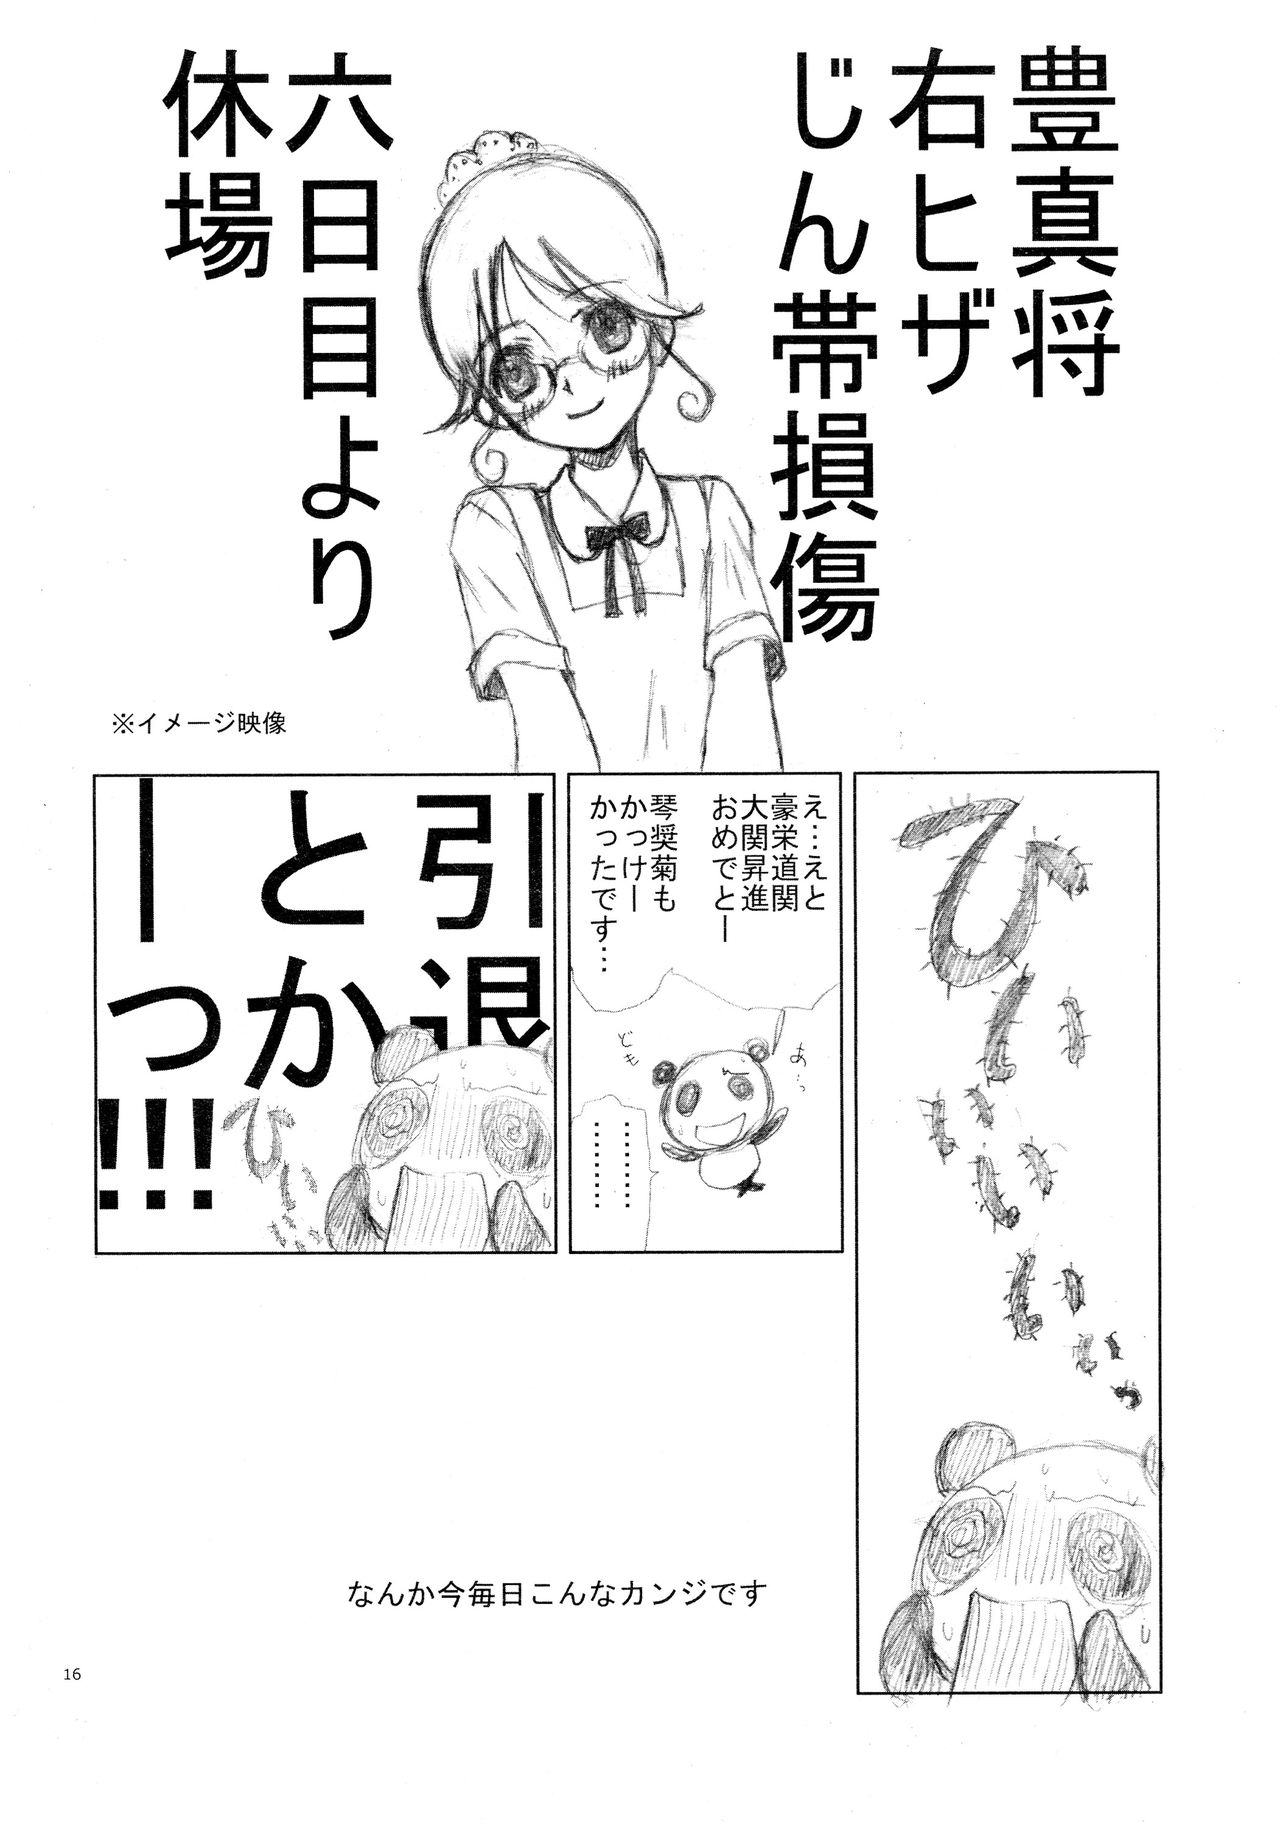 (C86) [Chanbara! (Kimuraya Izumi)] Intro-Duction any summer (Hitsugi no Chaika) (C86) [ちゃんばら! (木村屋いづみ)] Intro-Duction any summer (棺姫のチャイカ)